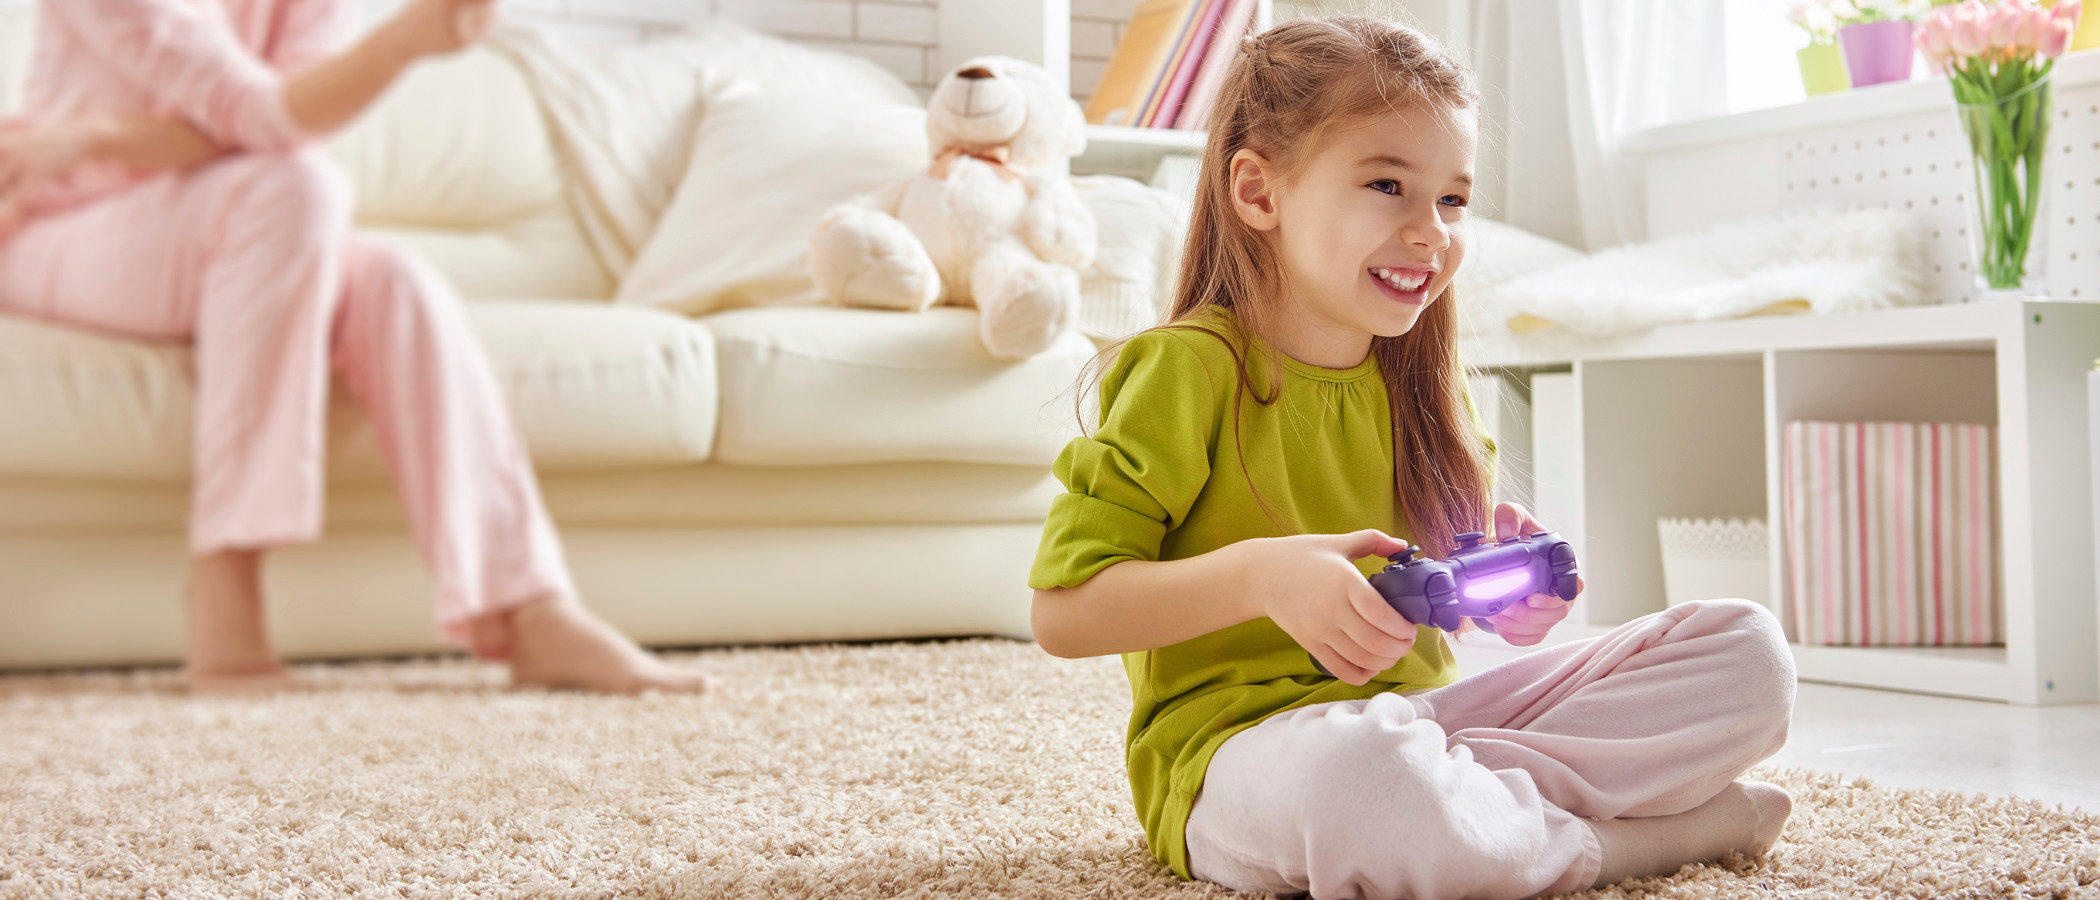 Consejos para comprar videojuegos a tus hijos y escoger el adecuado a su edad